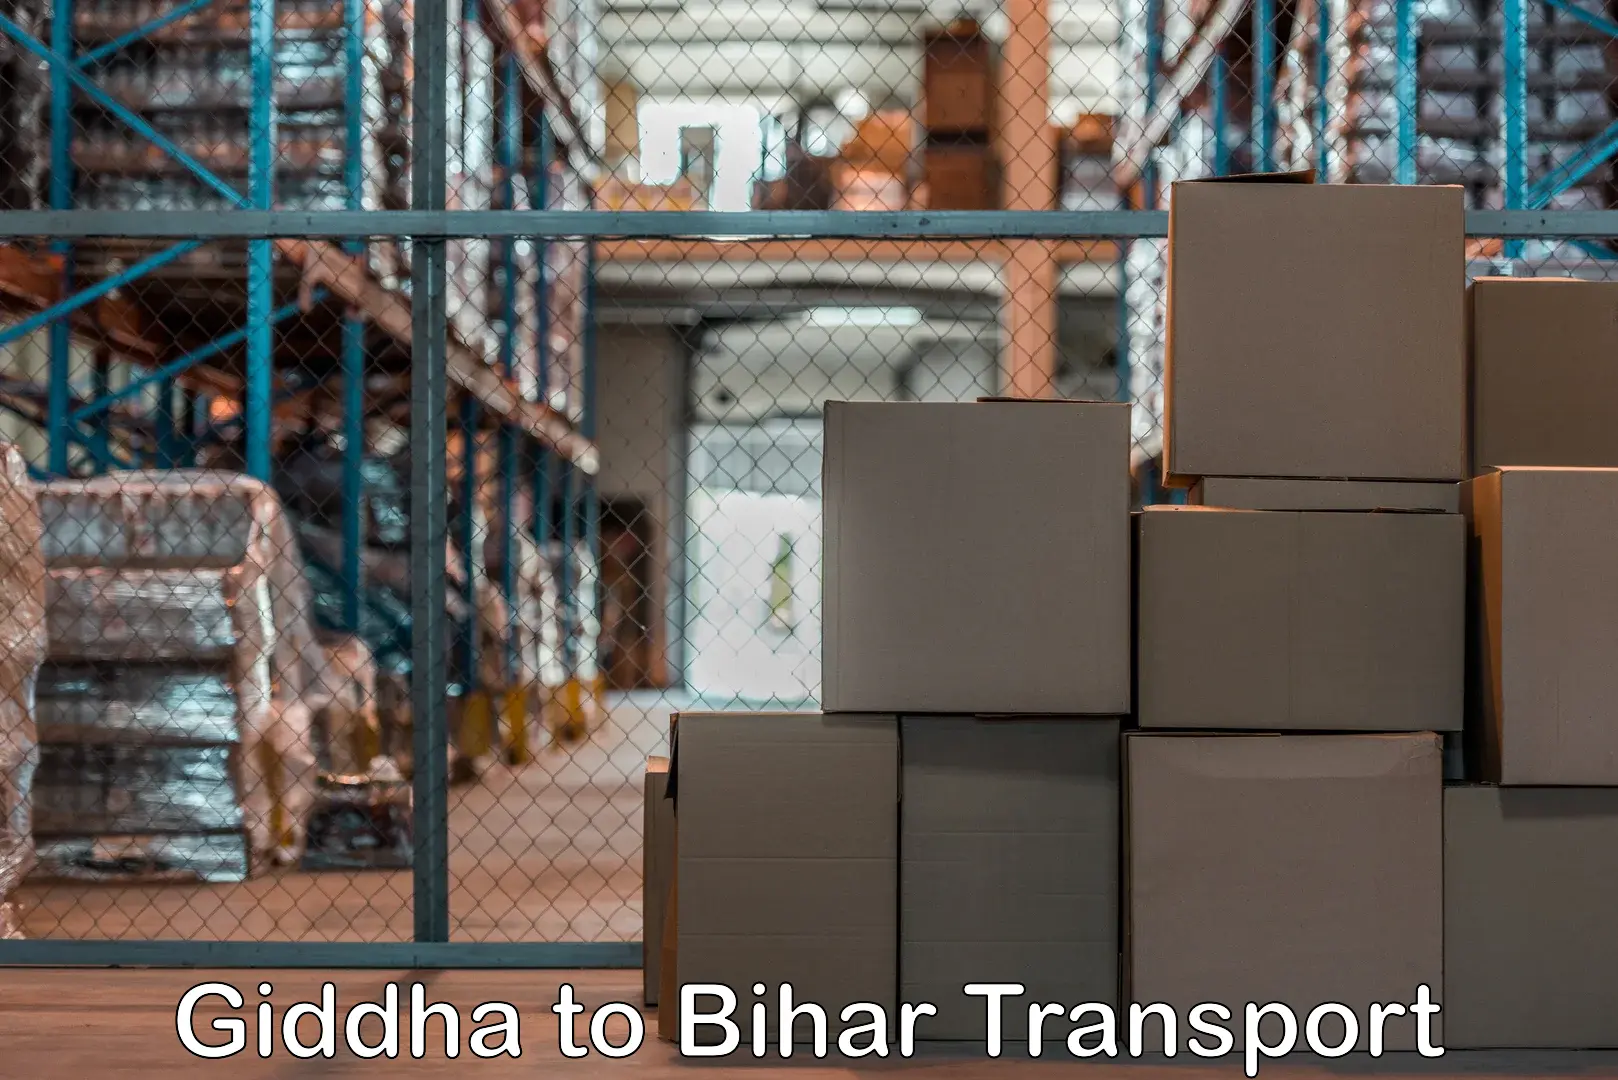 Cargo train transport services Giddha to Bhagalpur